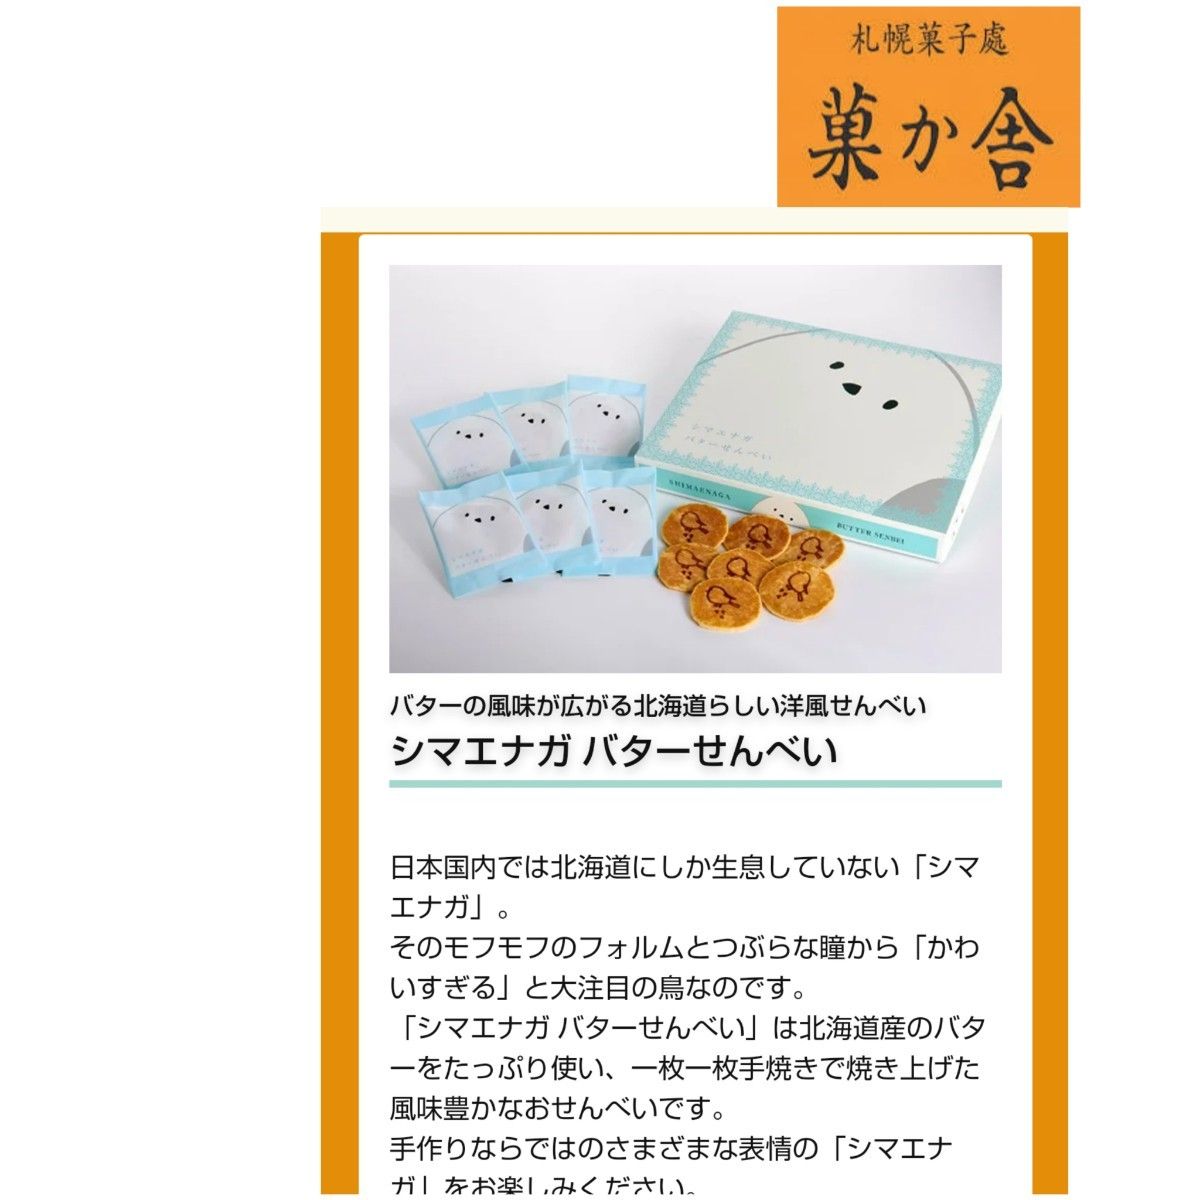 【北海道菓子】札幌菓か舎 シマエナガ バターせんべい 計2点